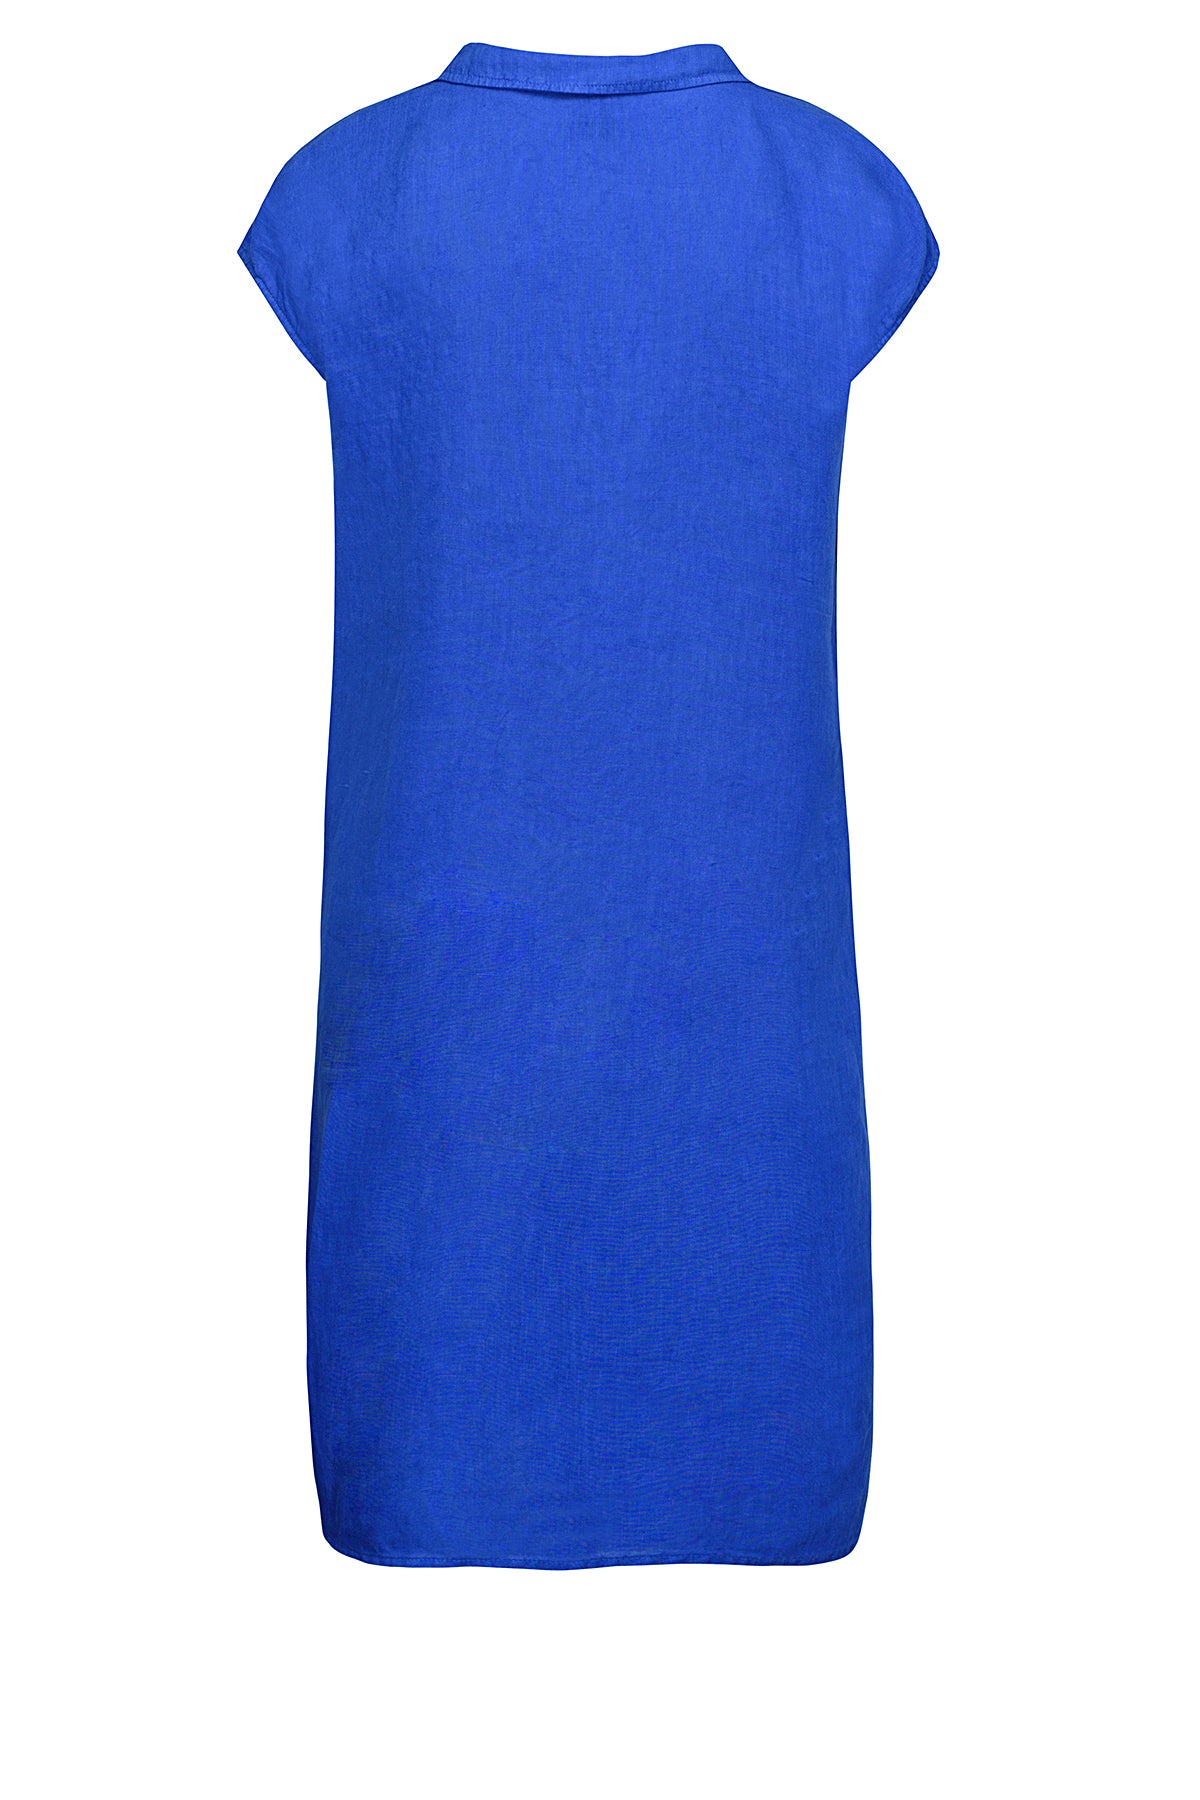 LUXZUZ // ONE TWO Karima Dress Dress 558 Dazzling Blue